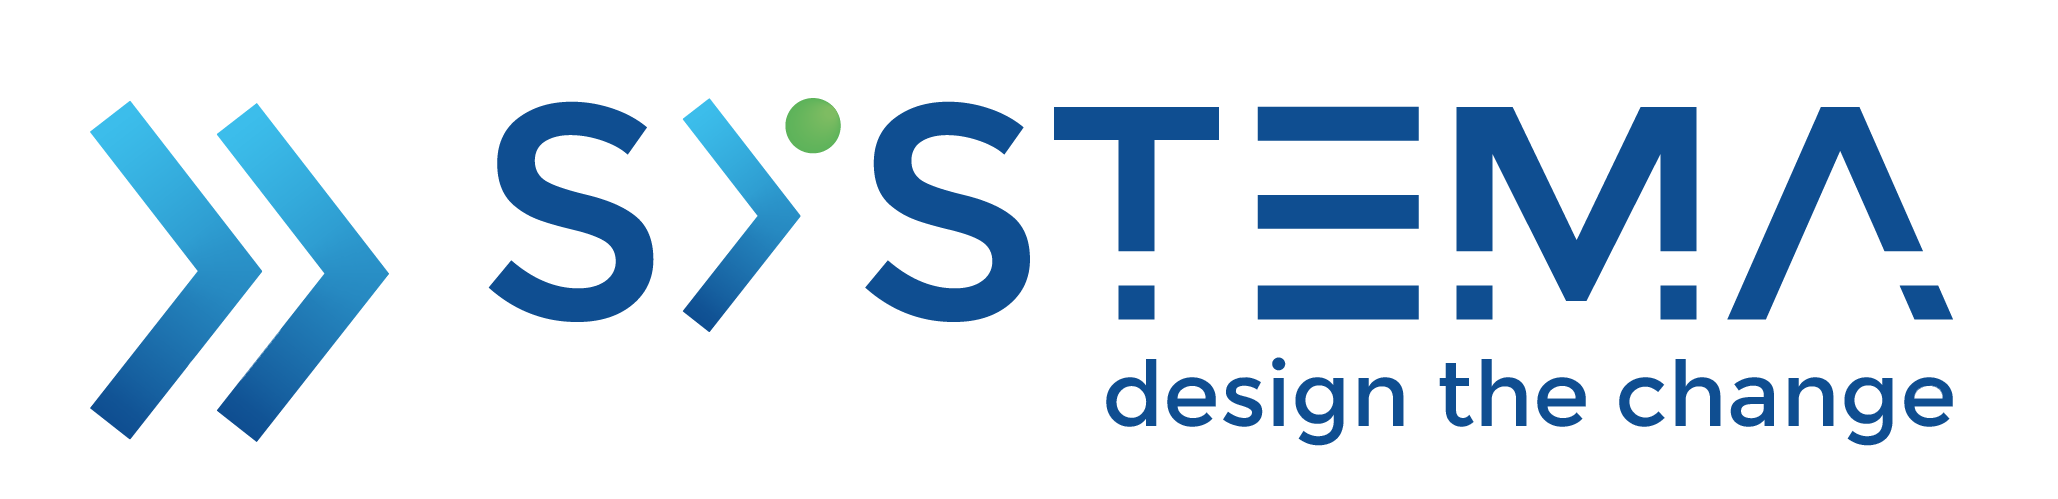 systema's logo